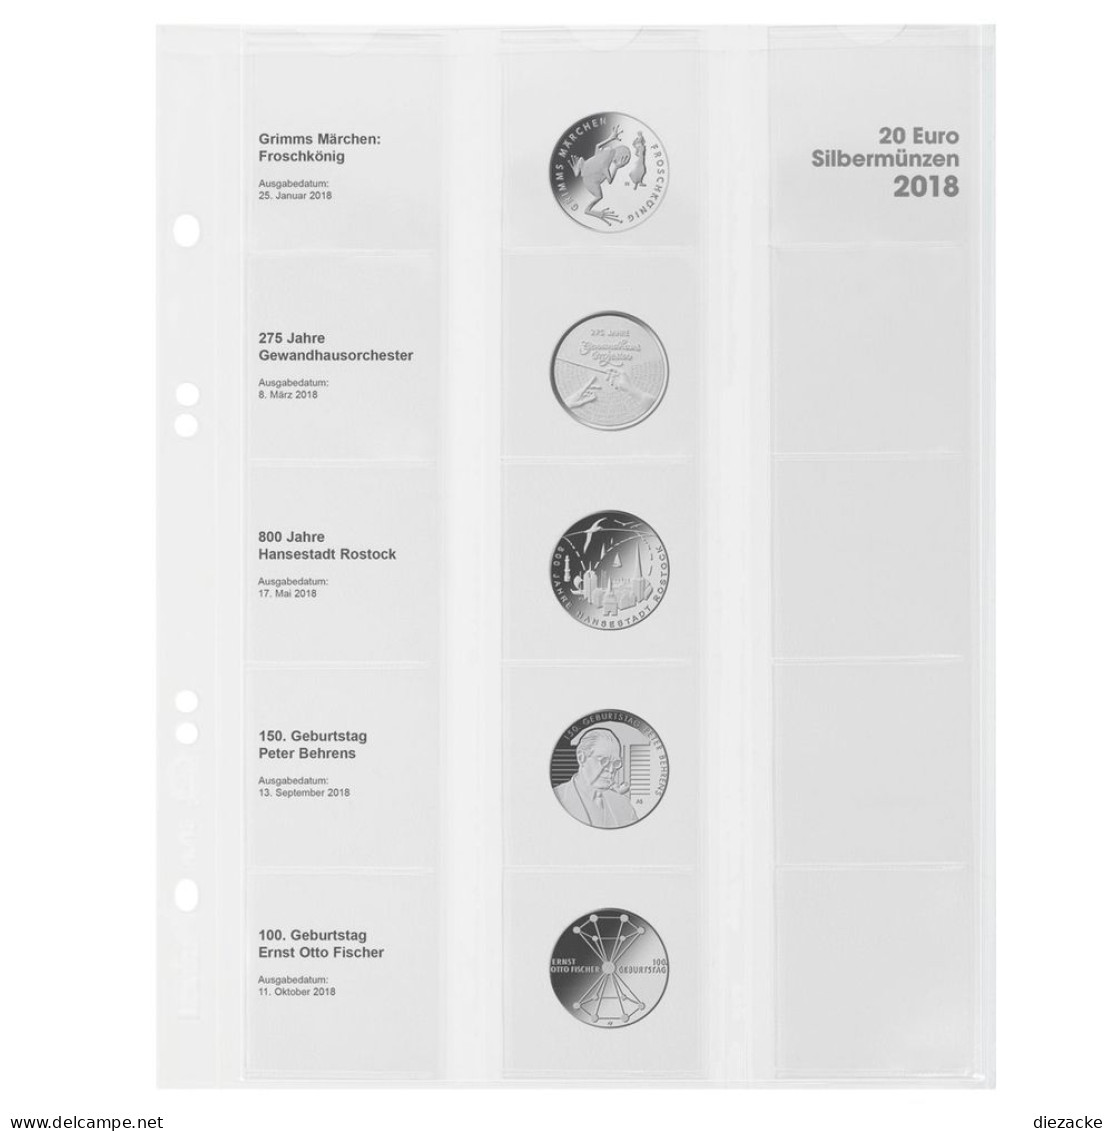 Lindner Vordruckblatt Publica M Für 20 Euro-Silbermünzen MU20E18 Neu - Matériel